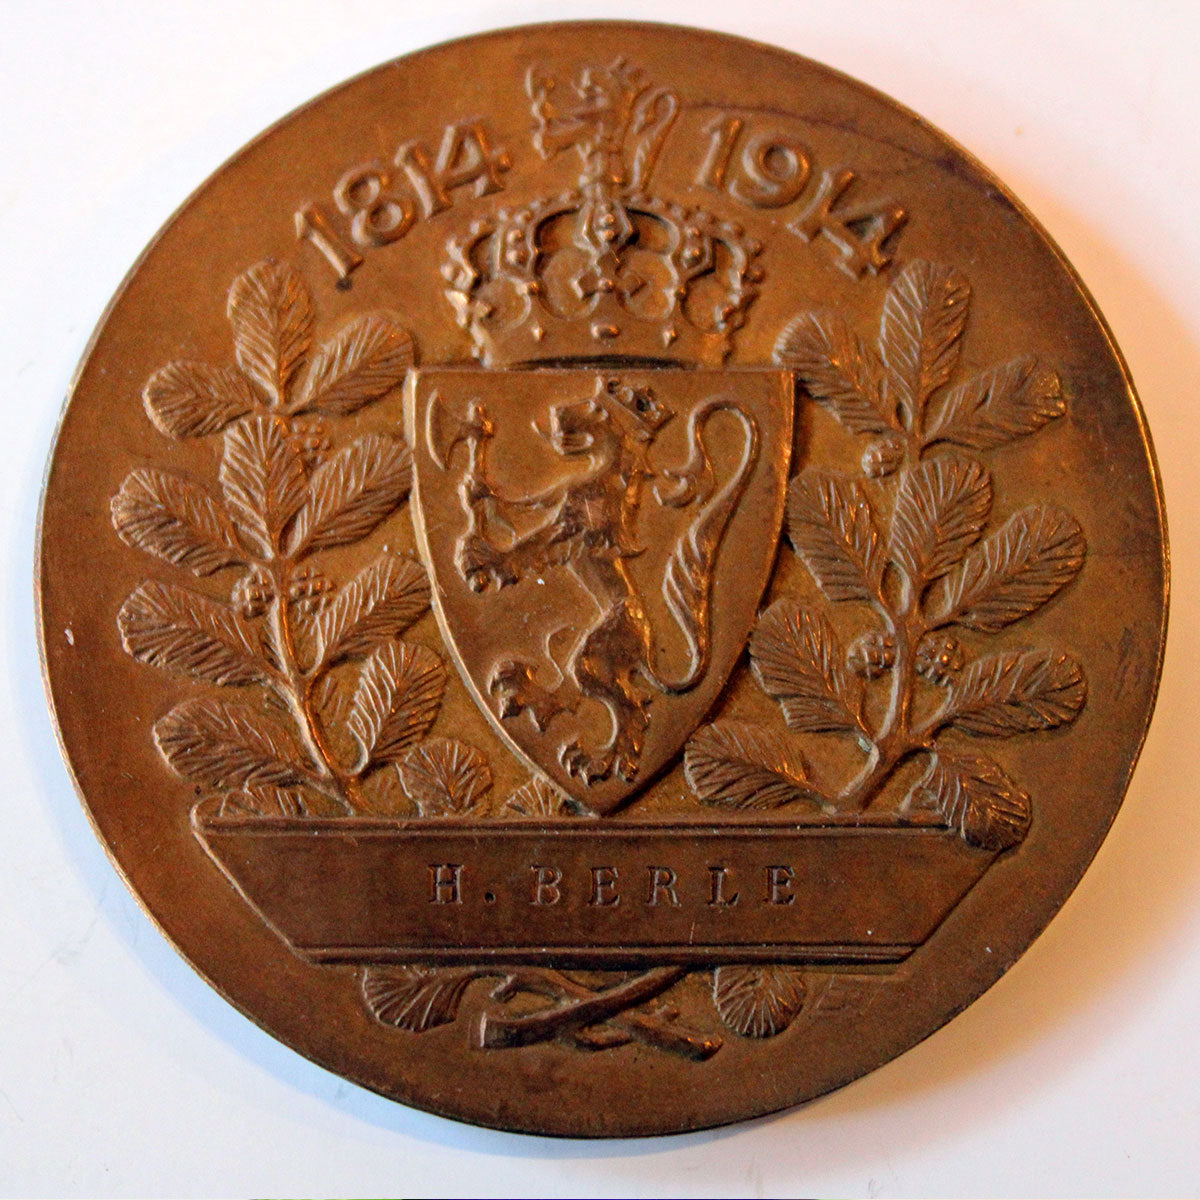 Medaljen er lavet af den norske billedhugger Daniel Niblin